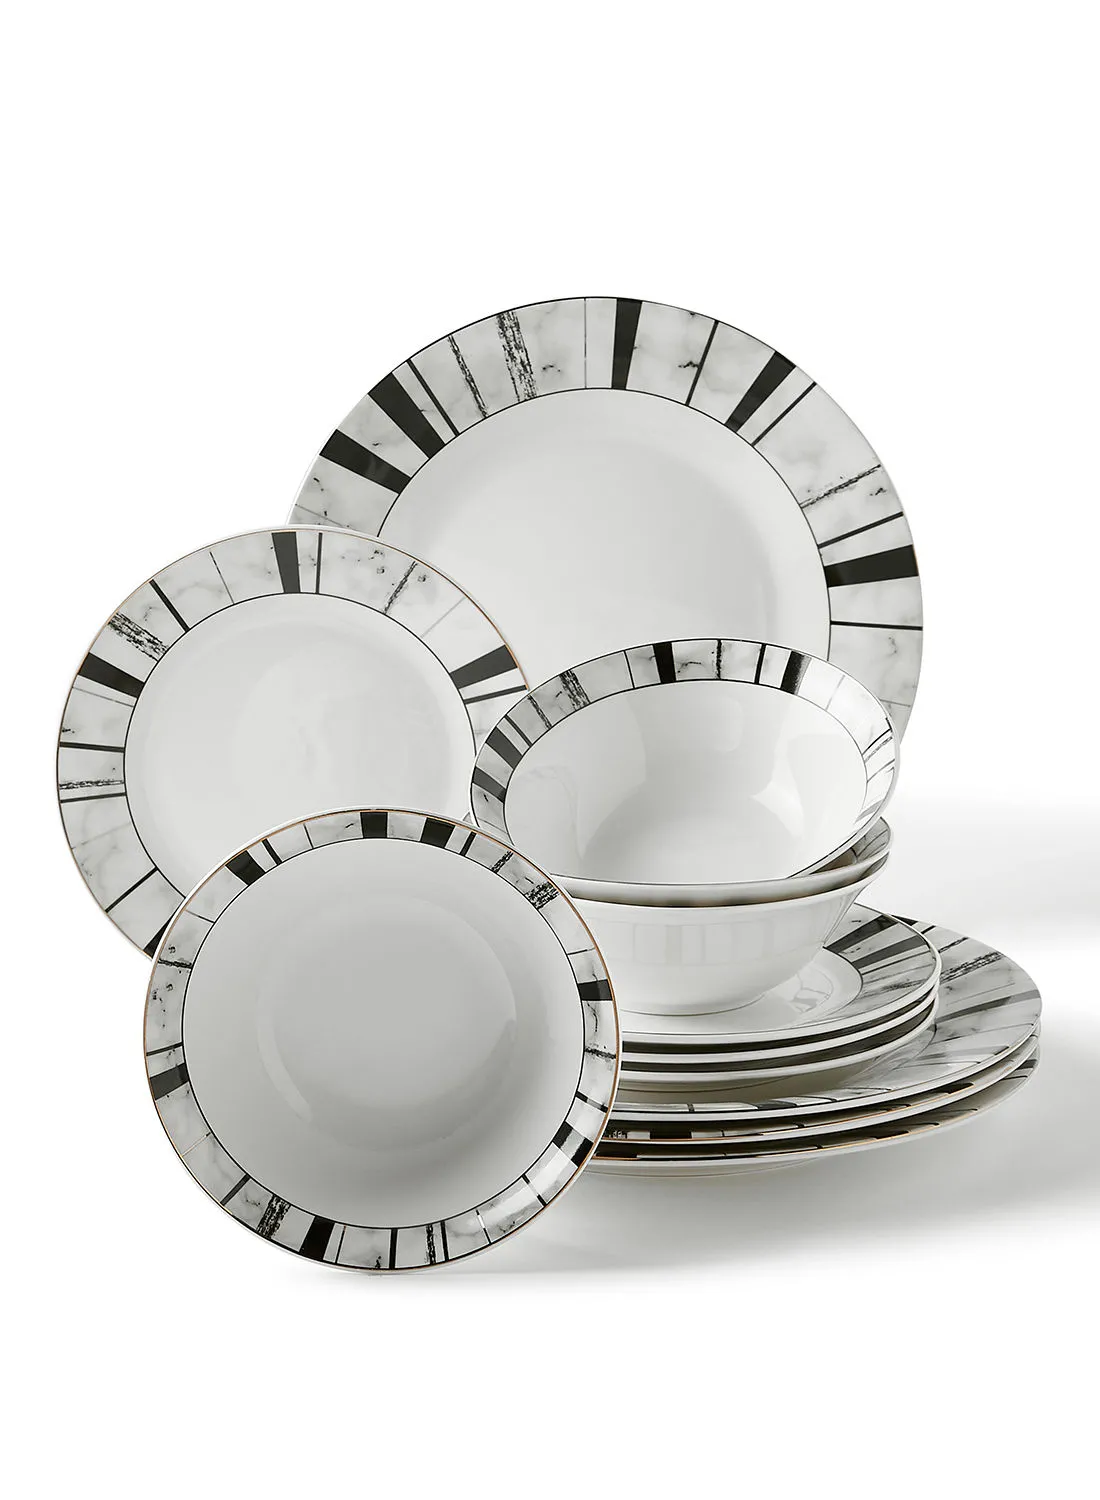 noon east 12 Piece Porcelain Dinner Set - Dishes, Plates - Dinner Plate, Side Plate, Bowl - Serves 4 - Printed Design Marbella